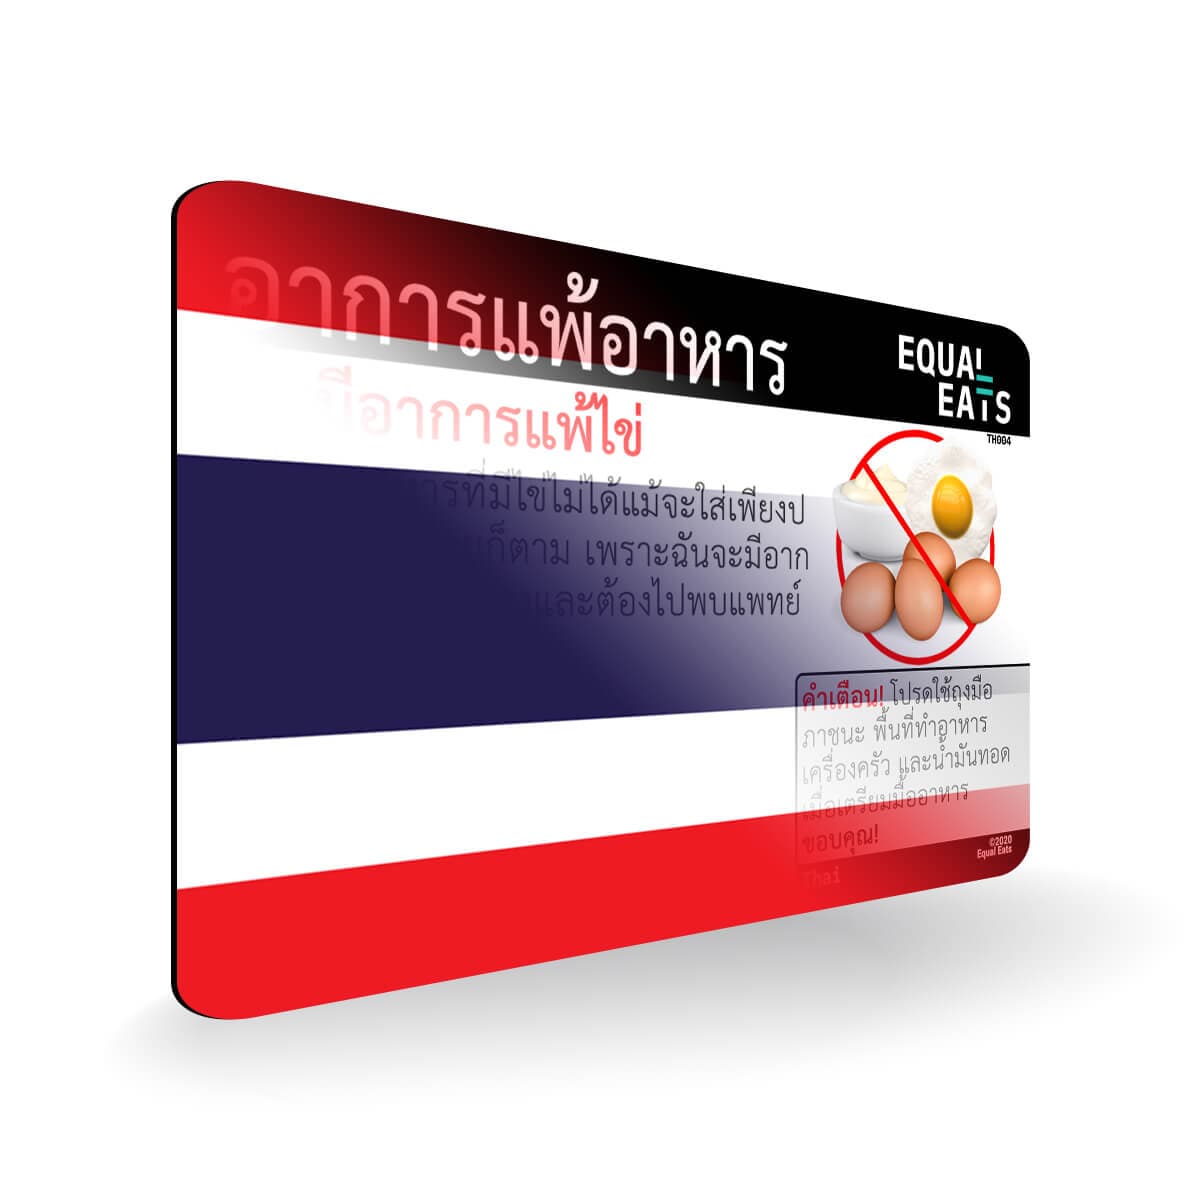 Egg Allergy in Thai. Egg Allergy Card for Thailand